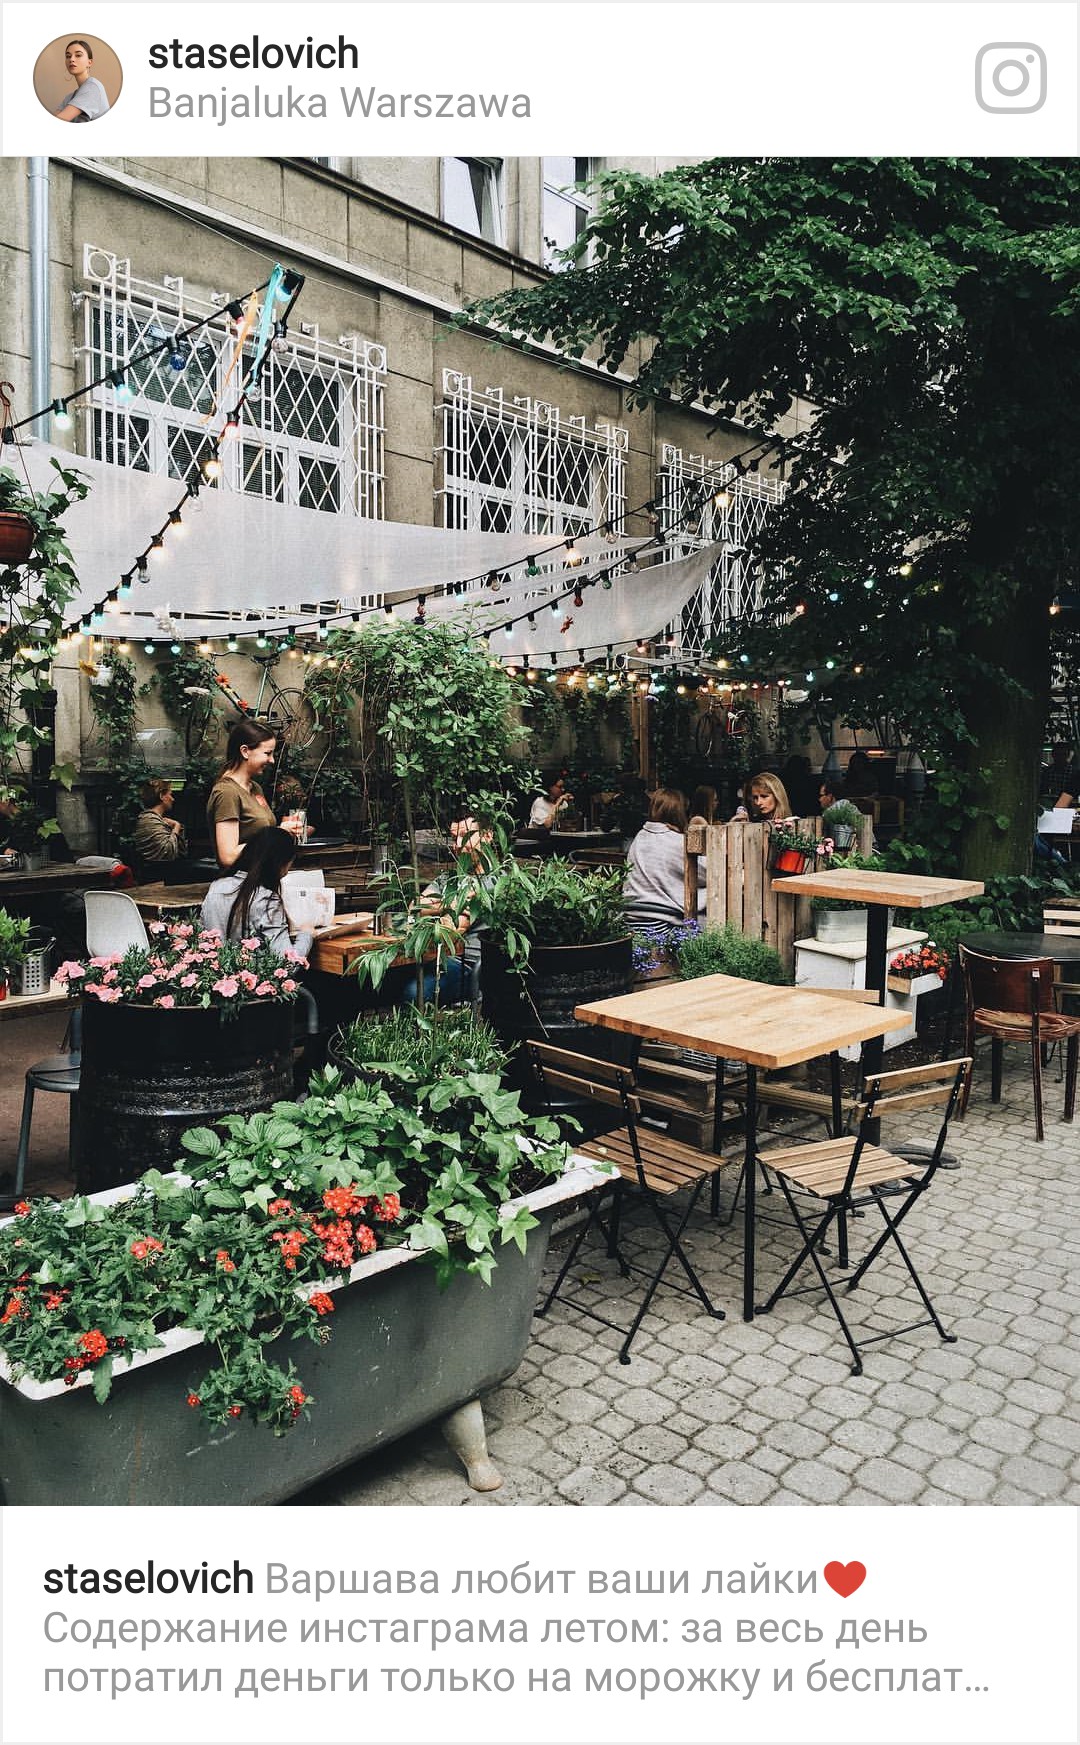 7 3 Wiemy, gdzie znaleźć najbardziej instagramowe miejsce w Warszawie